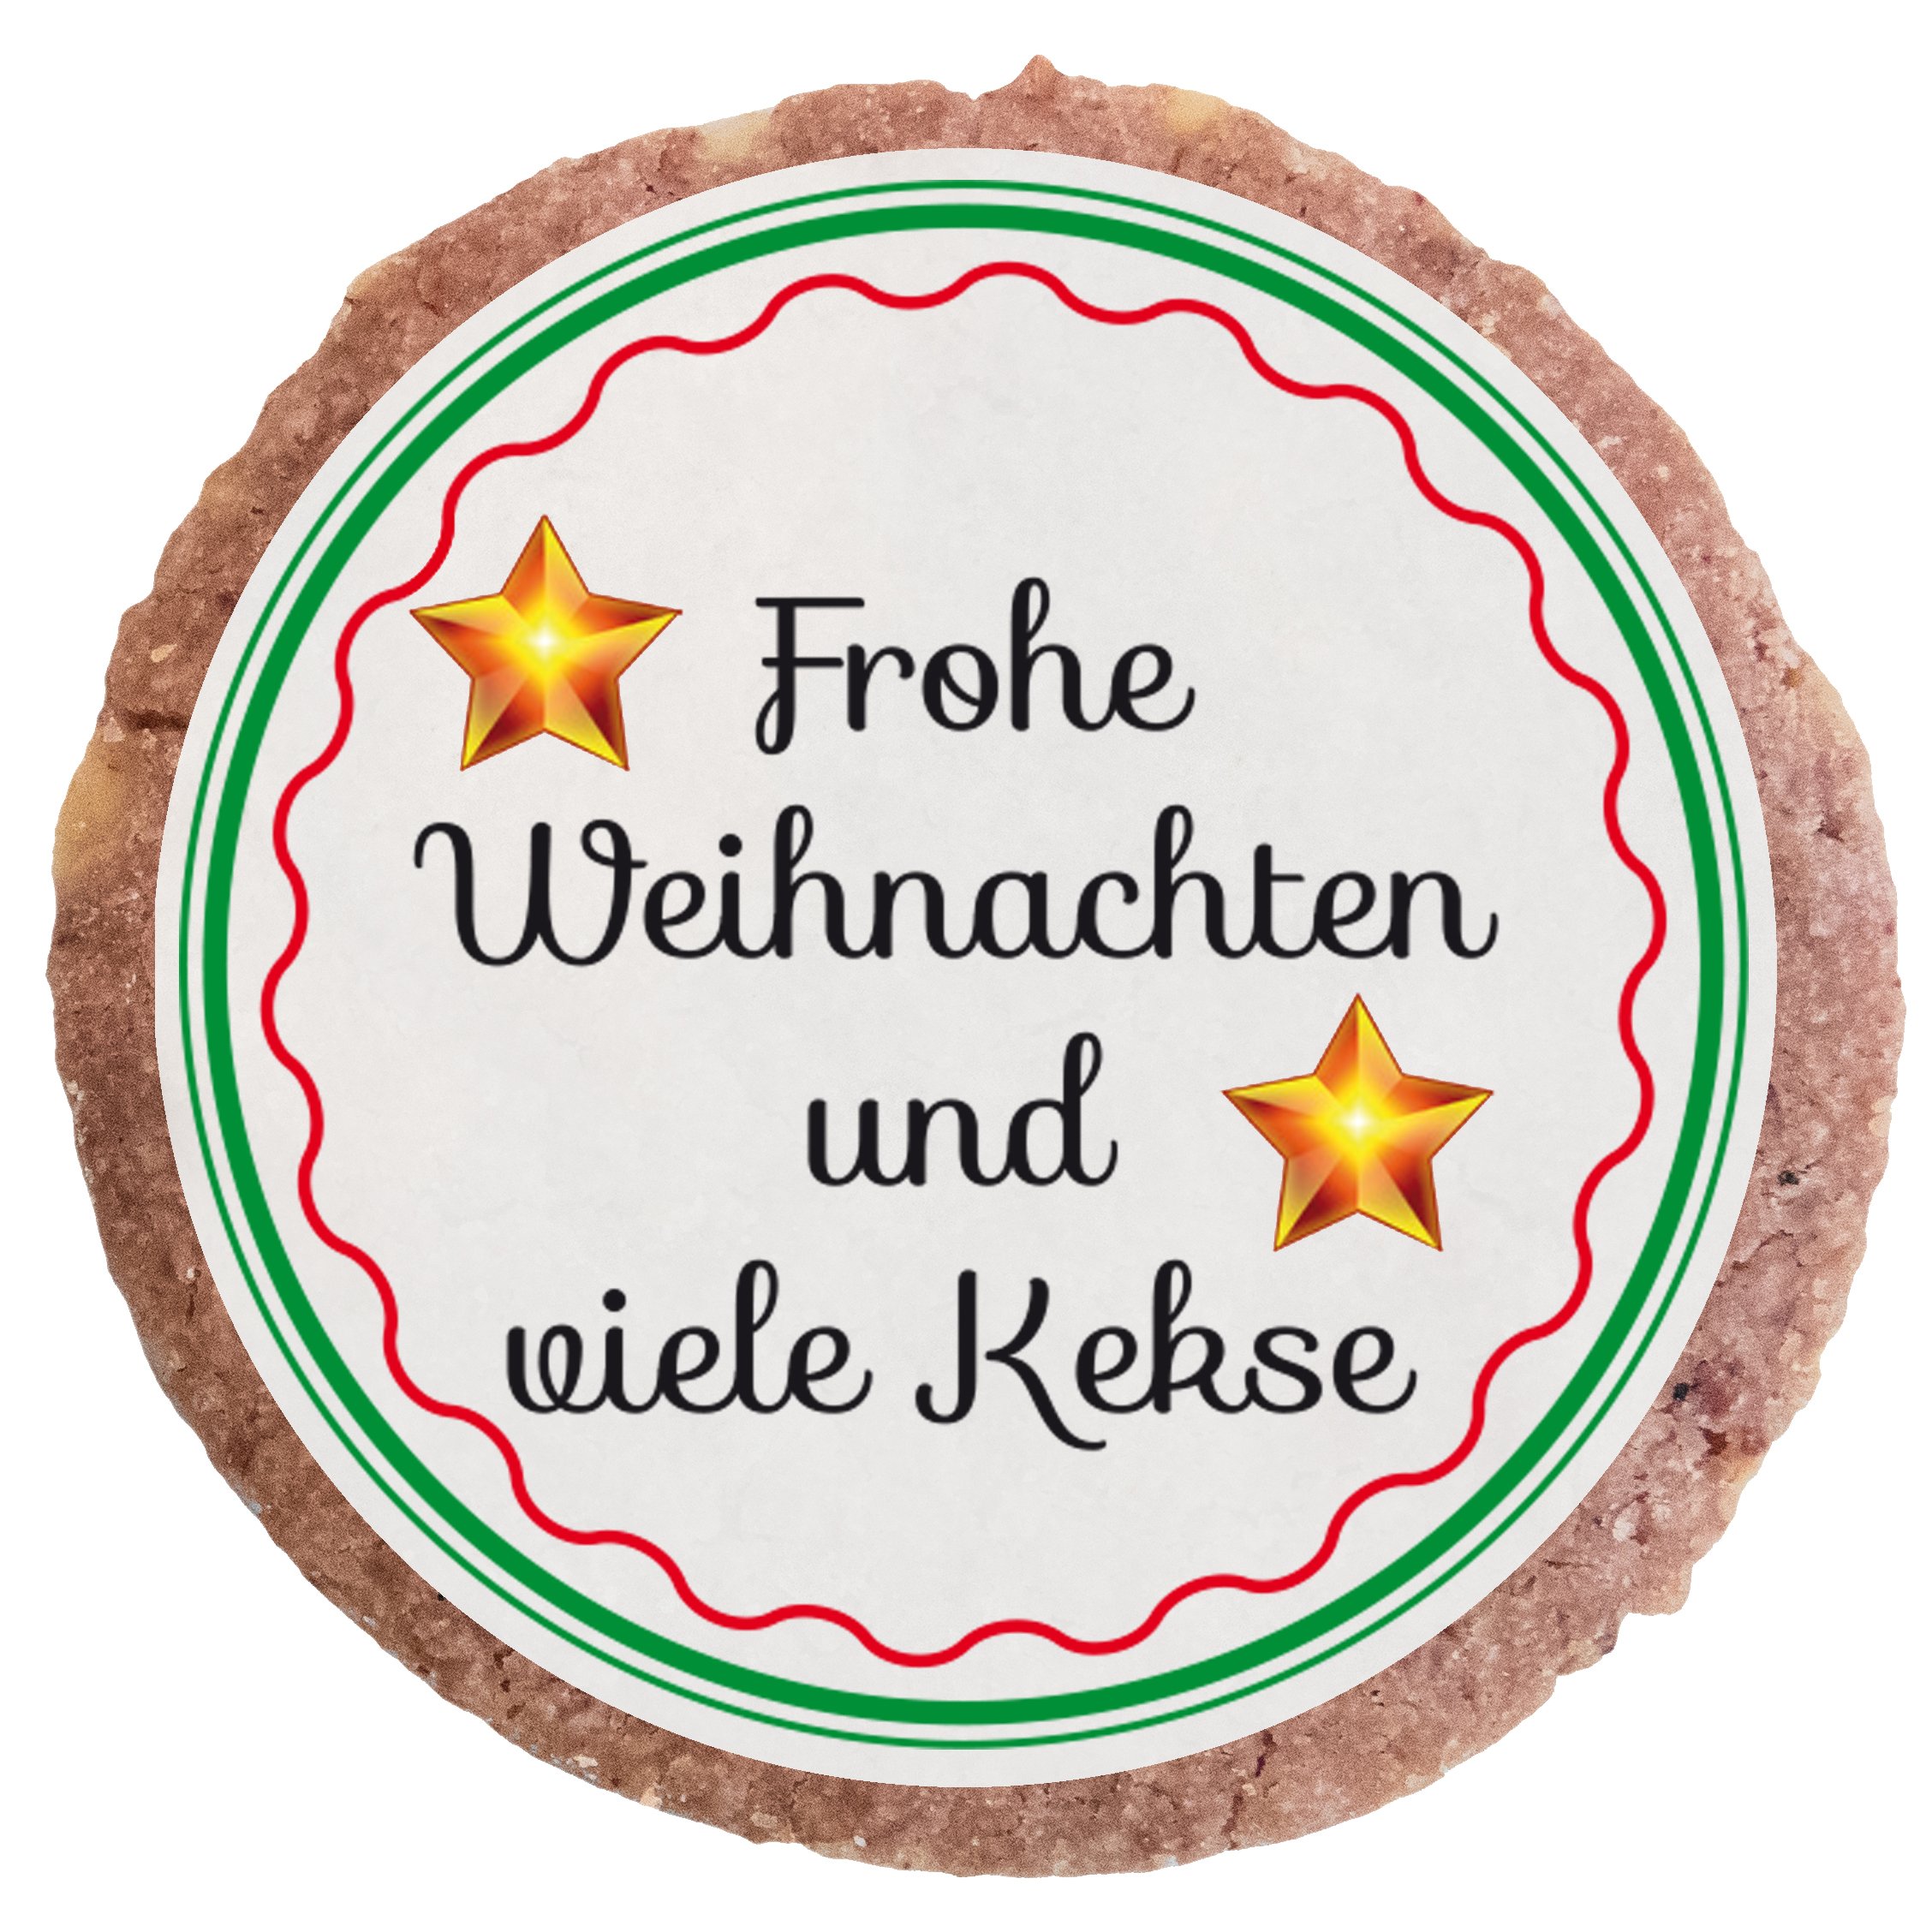 "Frohe Weihnachten und viele Kekse" MotivKEKS